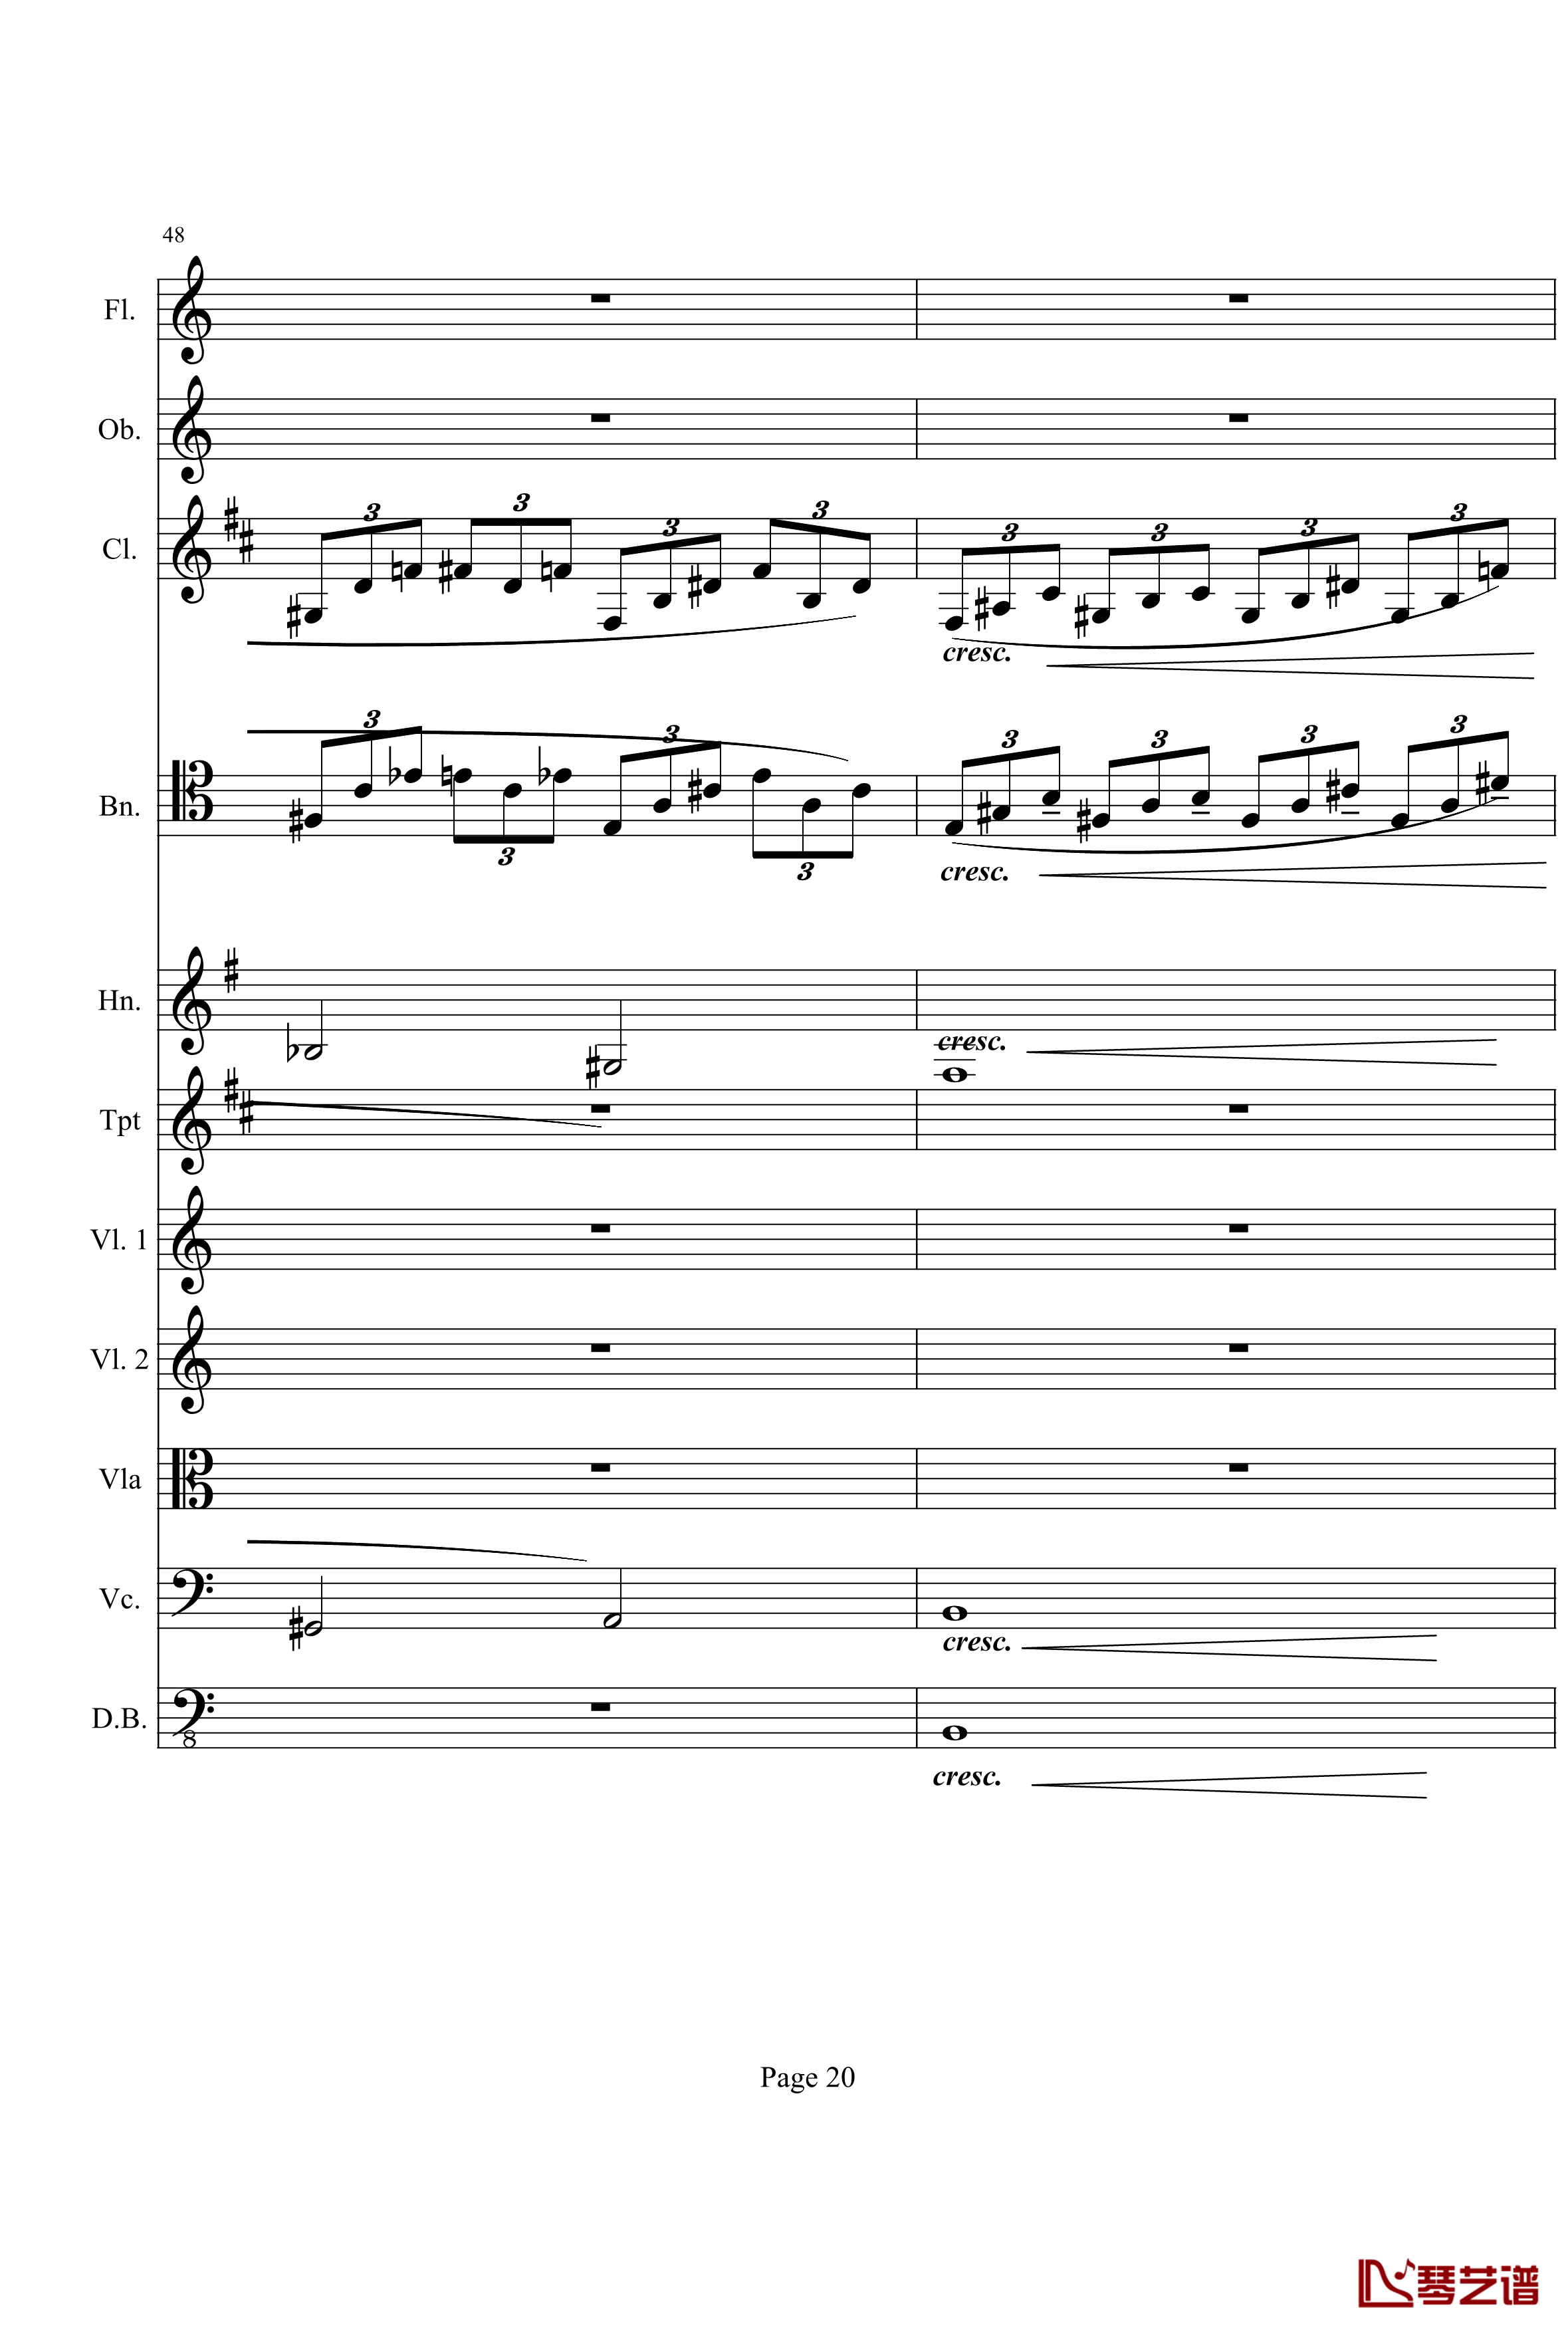 奏鸣曲之交响钢琴谱-第21-Ⅰ-贝多芬-beethoven20